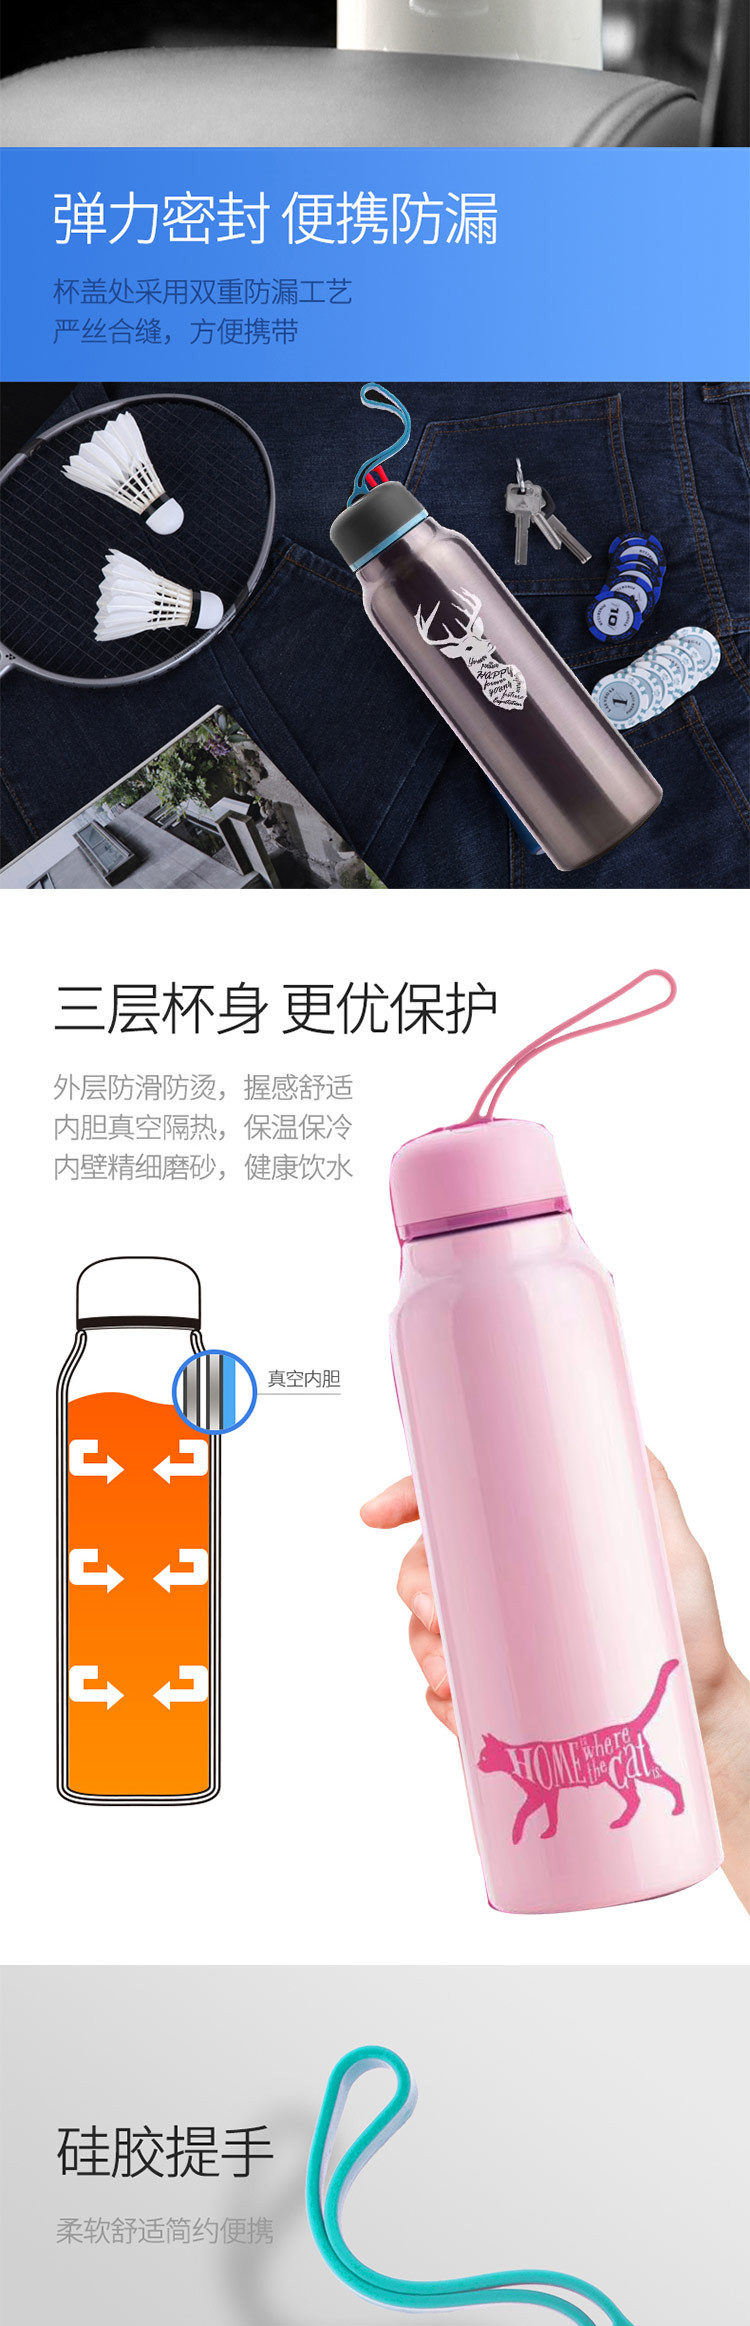 台湾Artiart创意便携水杯 波特保温杯 粉色 DRIN058P-CuteCat